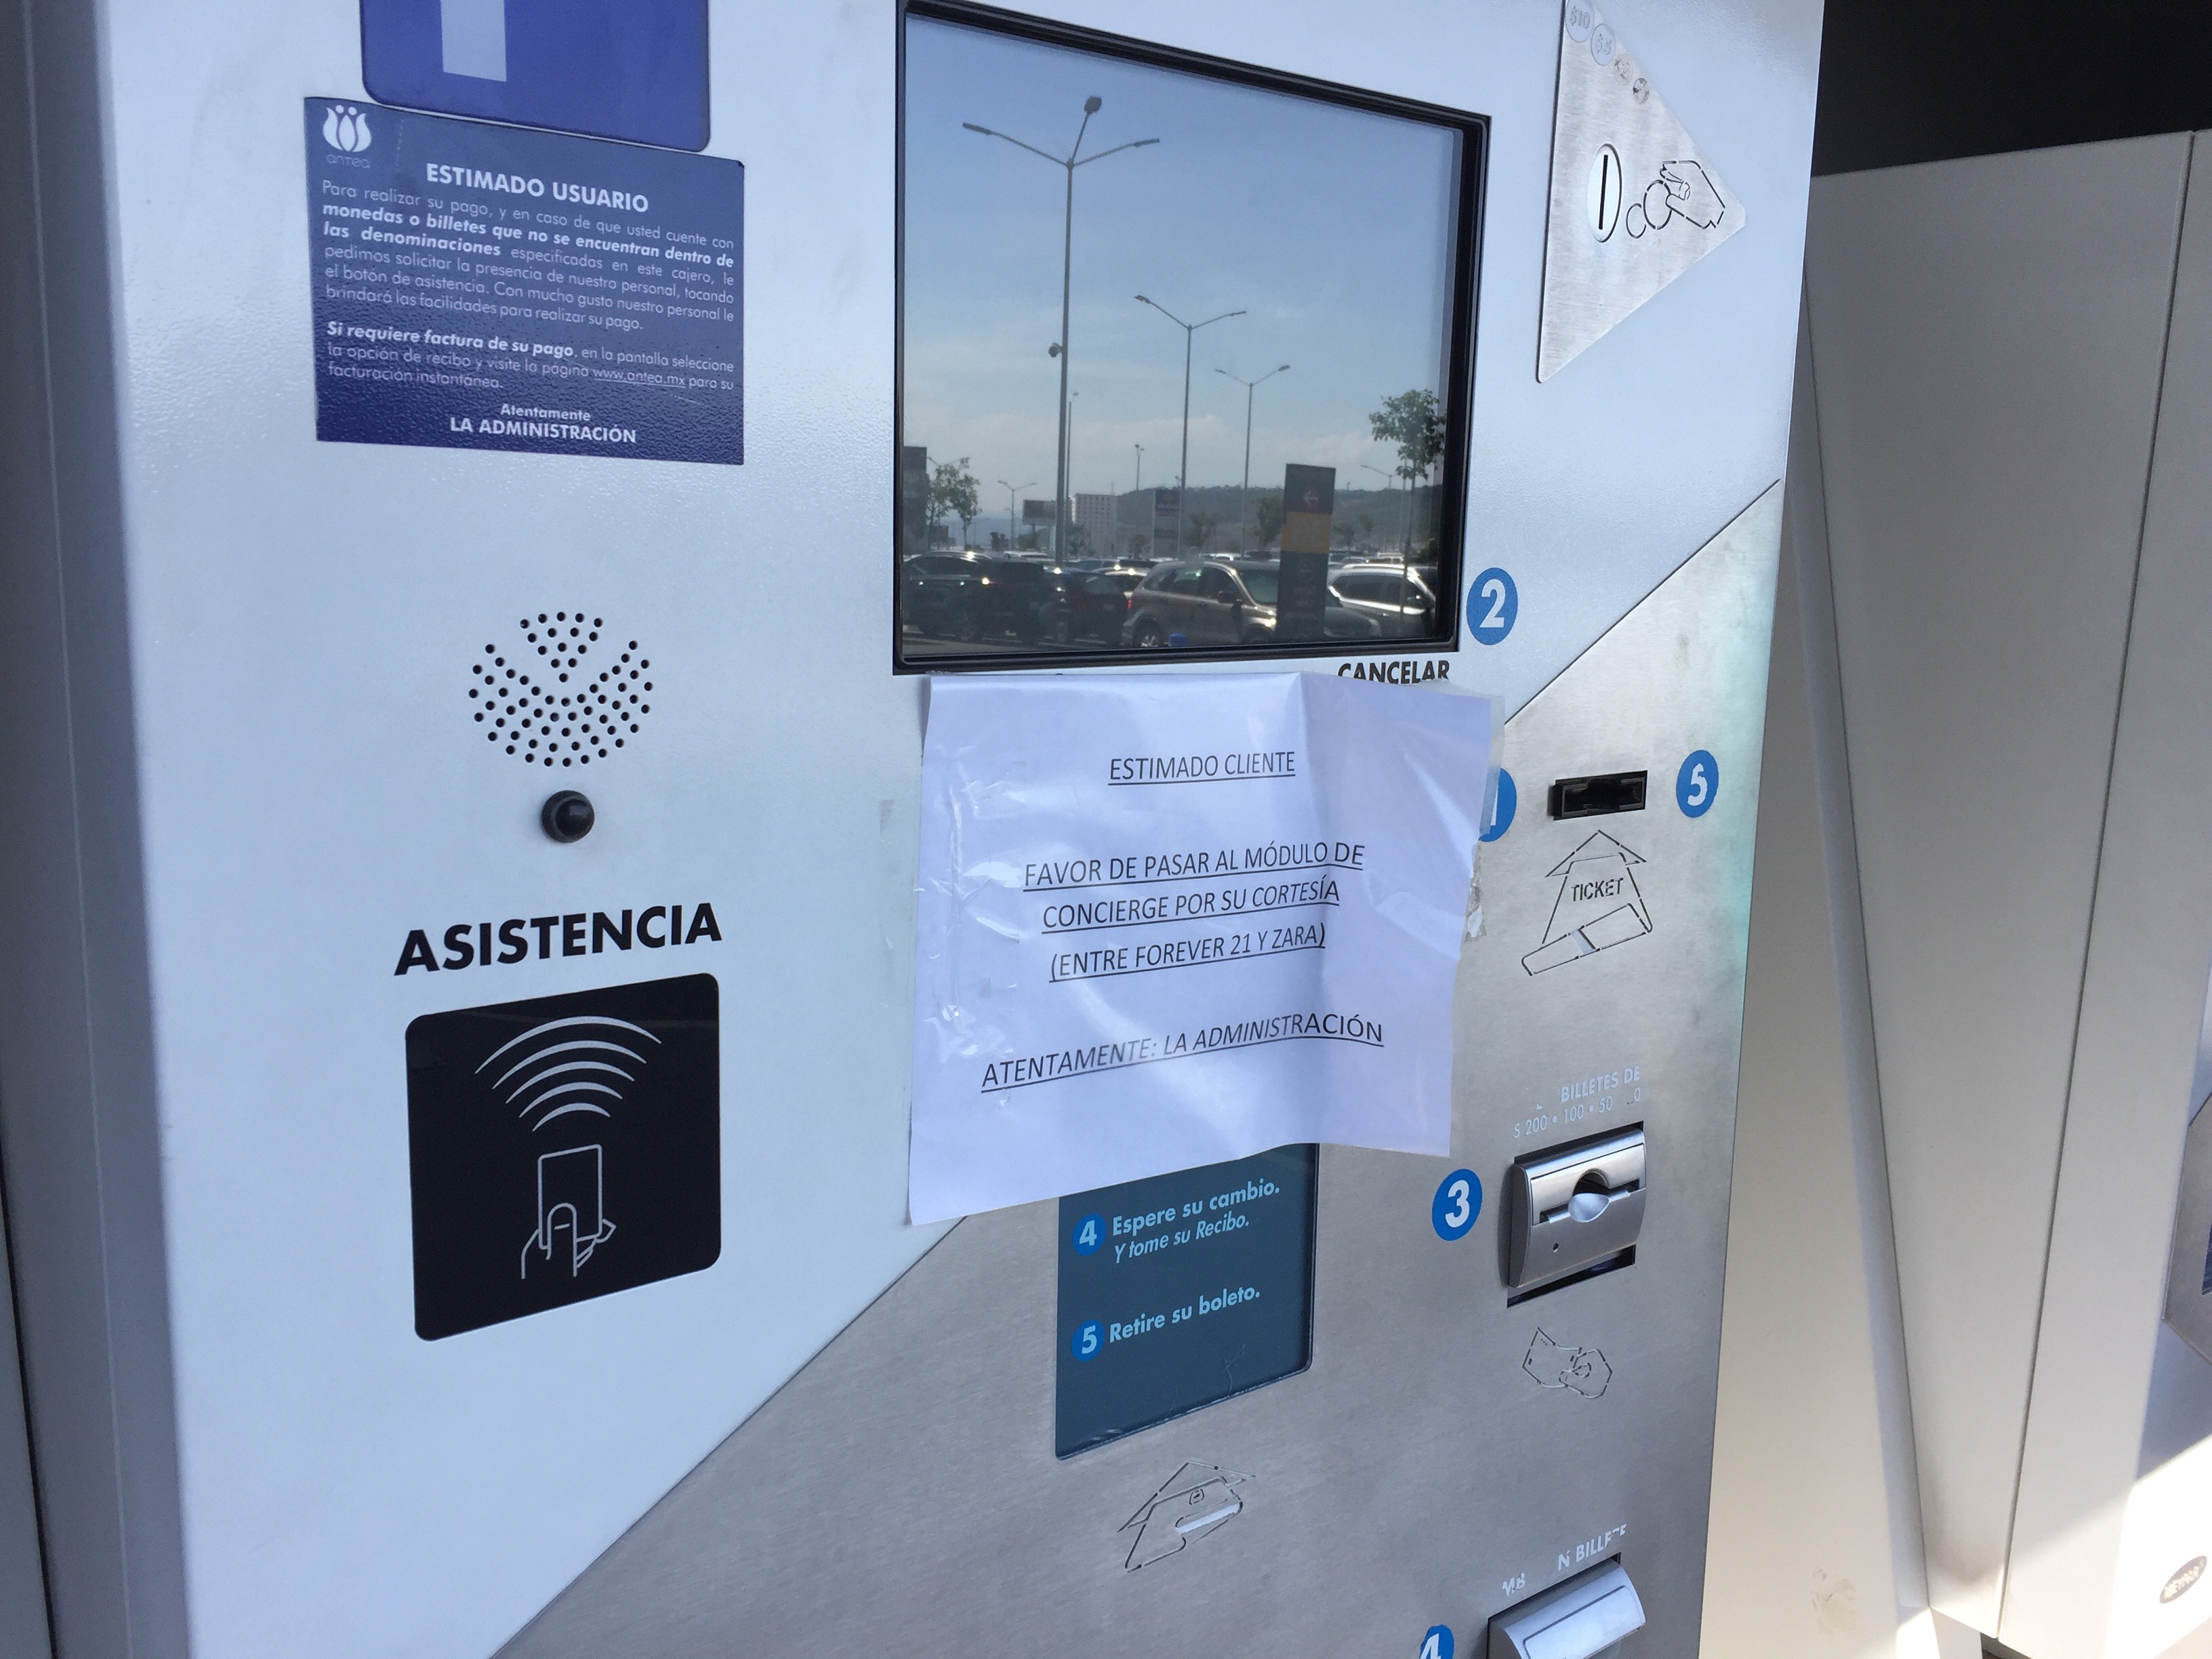  “Cuando cumplan con los requisitos”, estacionamiento de Antea se abre: municipio de Querétaro